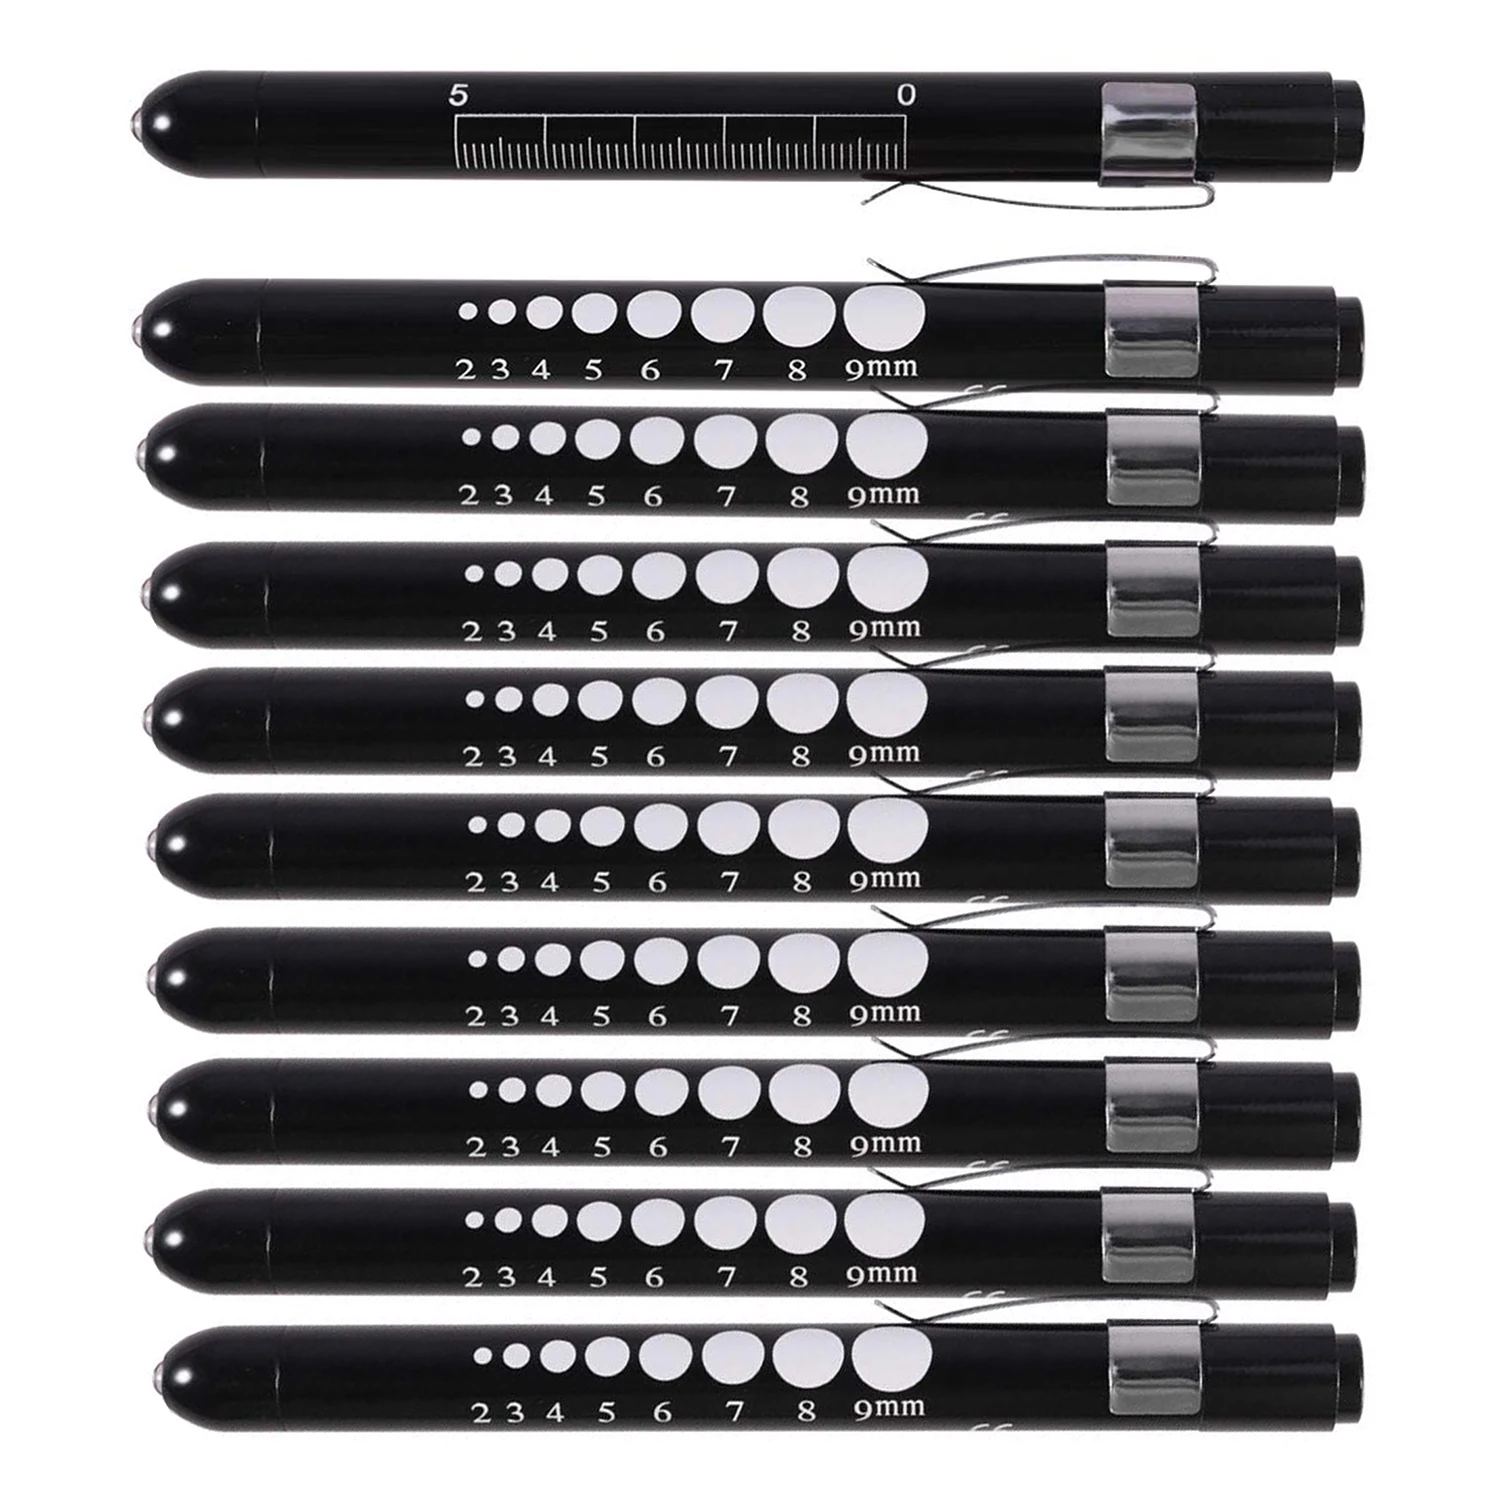 10 PCS Black Medical Pen Lights for Nurses Doctors, Reusable LED Medical Penlight Flashlight with Pupil Gauge and Ruler LED Pen